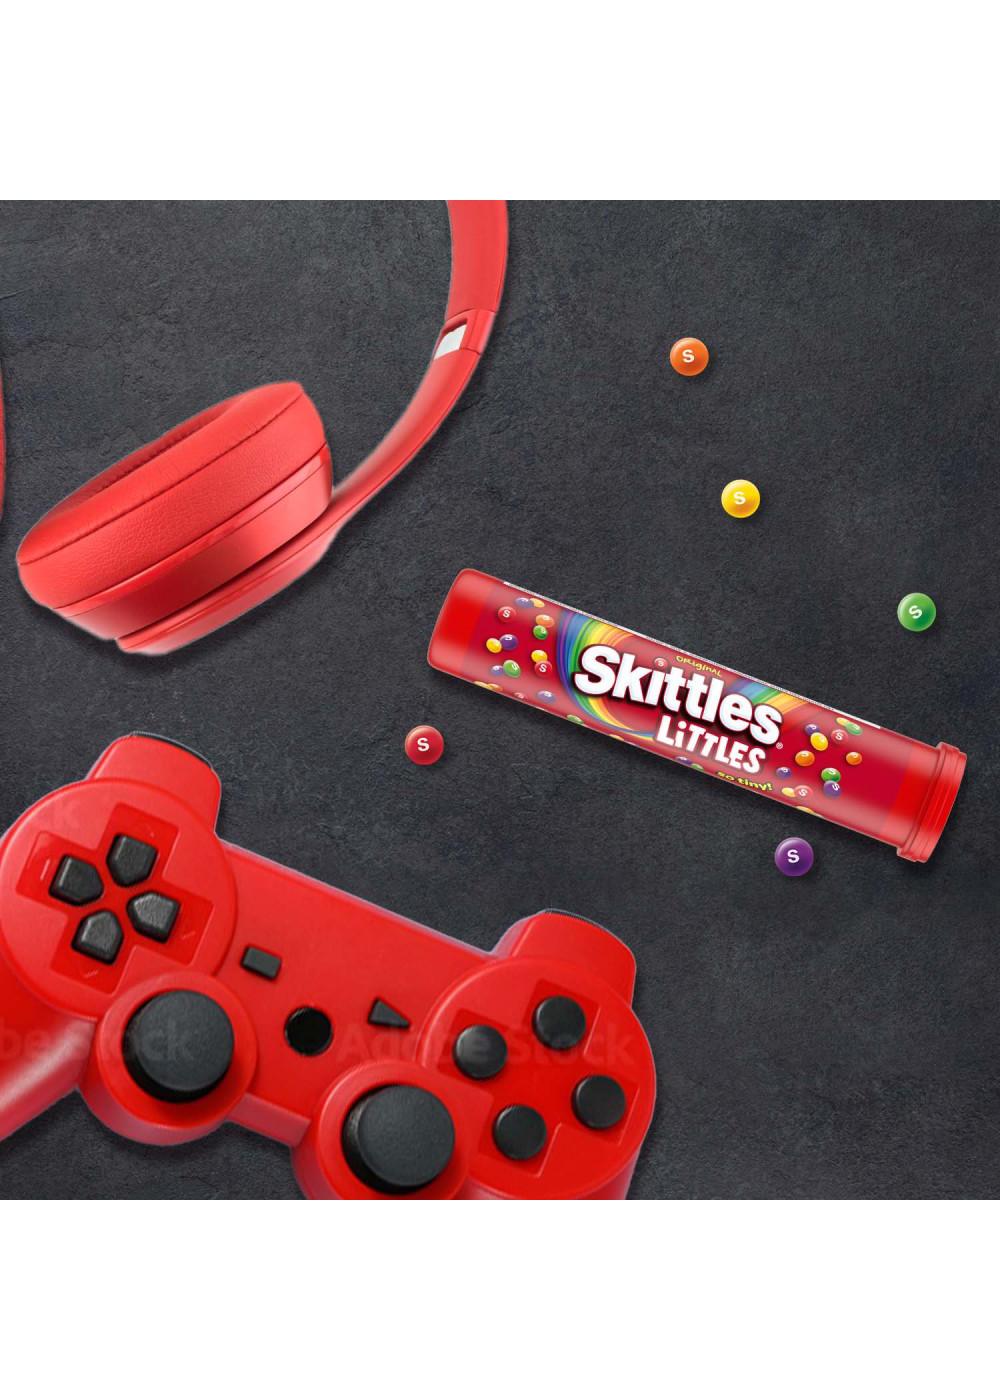 Skittles Original Littles Gummy Candy Mega Tube; image 5 of 8